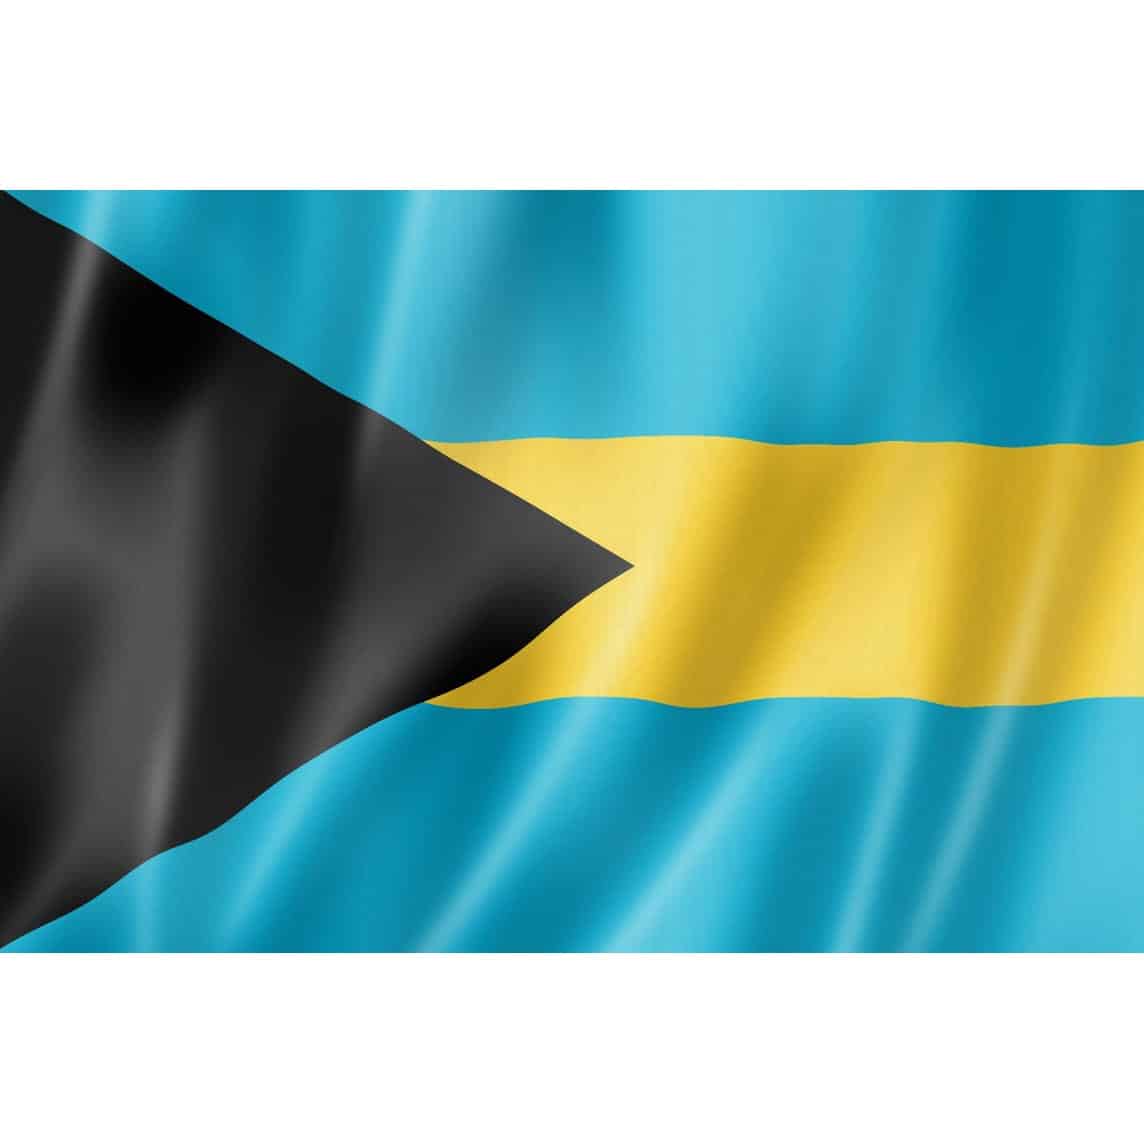 Flagge der Bahamas als Symbolbild für die Ausgabe des Sand Dollars durch die Zentralbank des Inselstaates